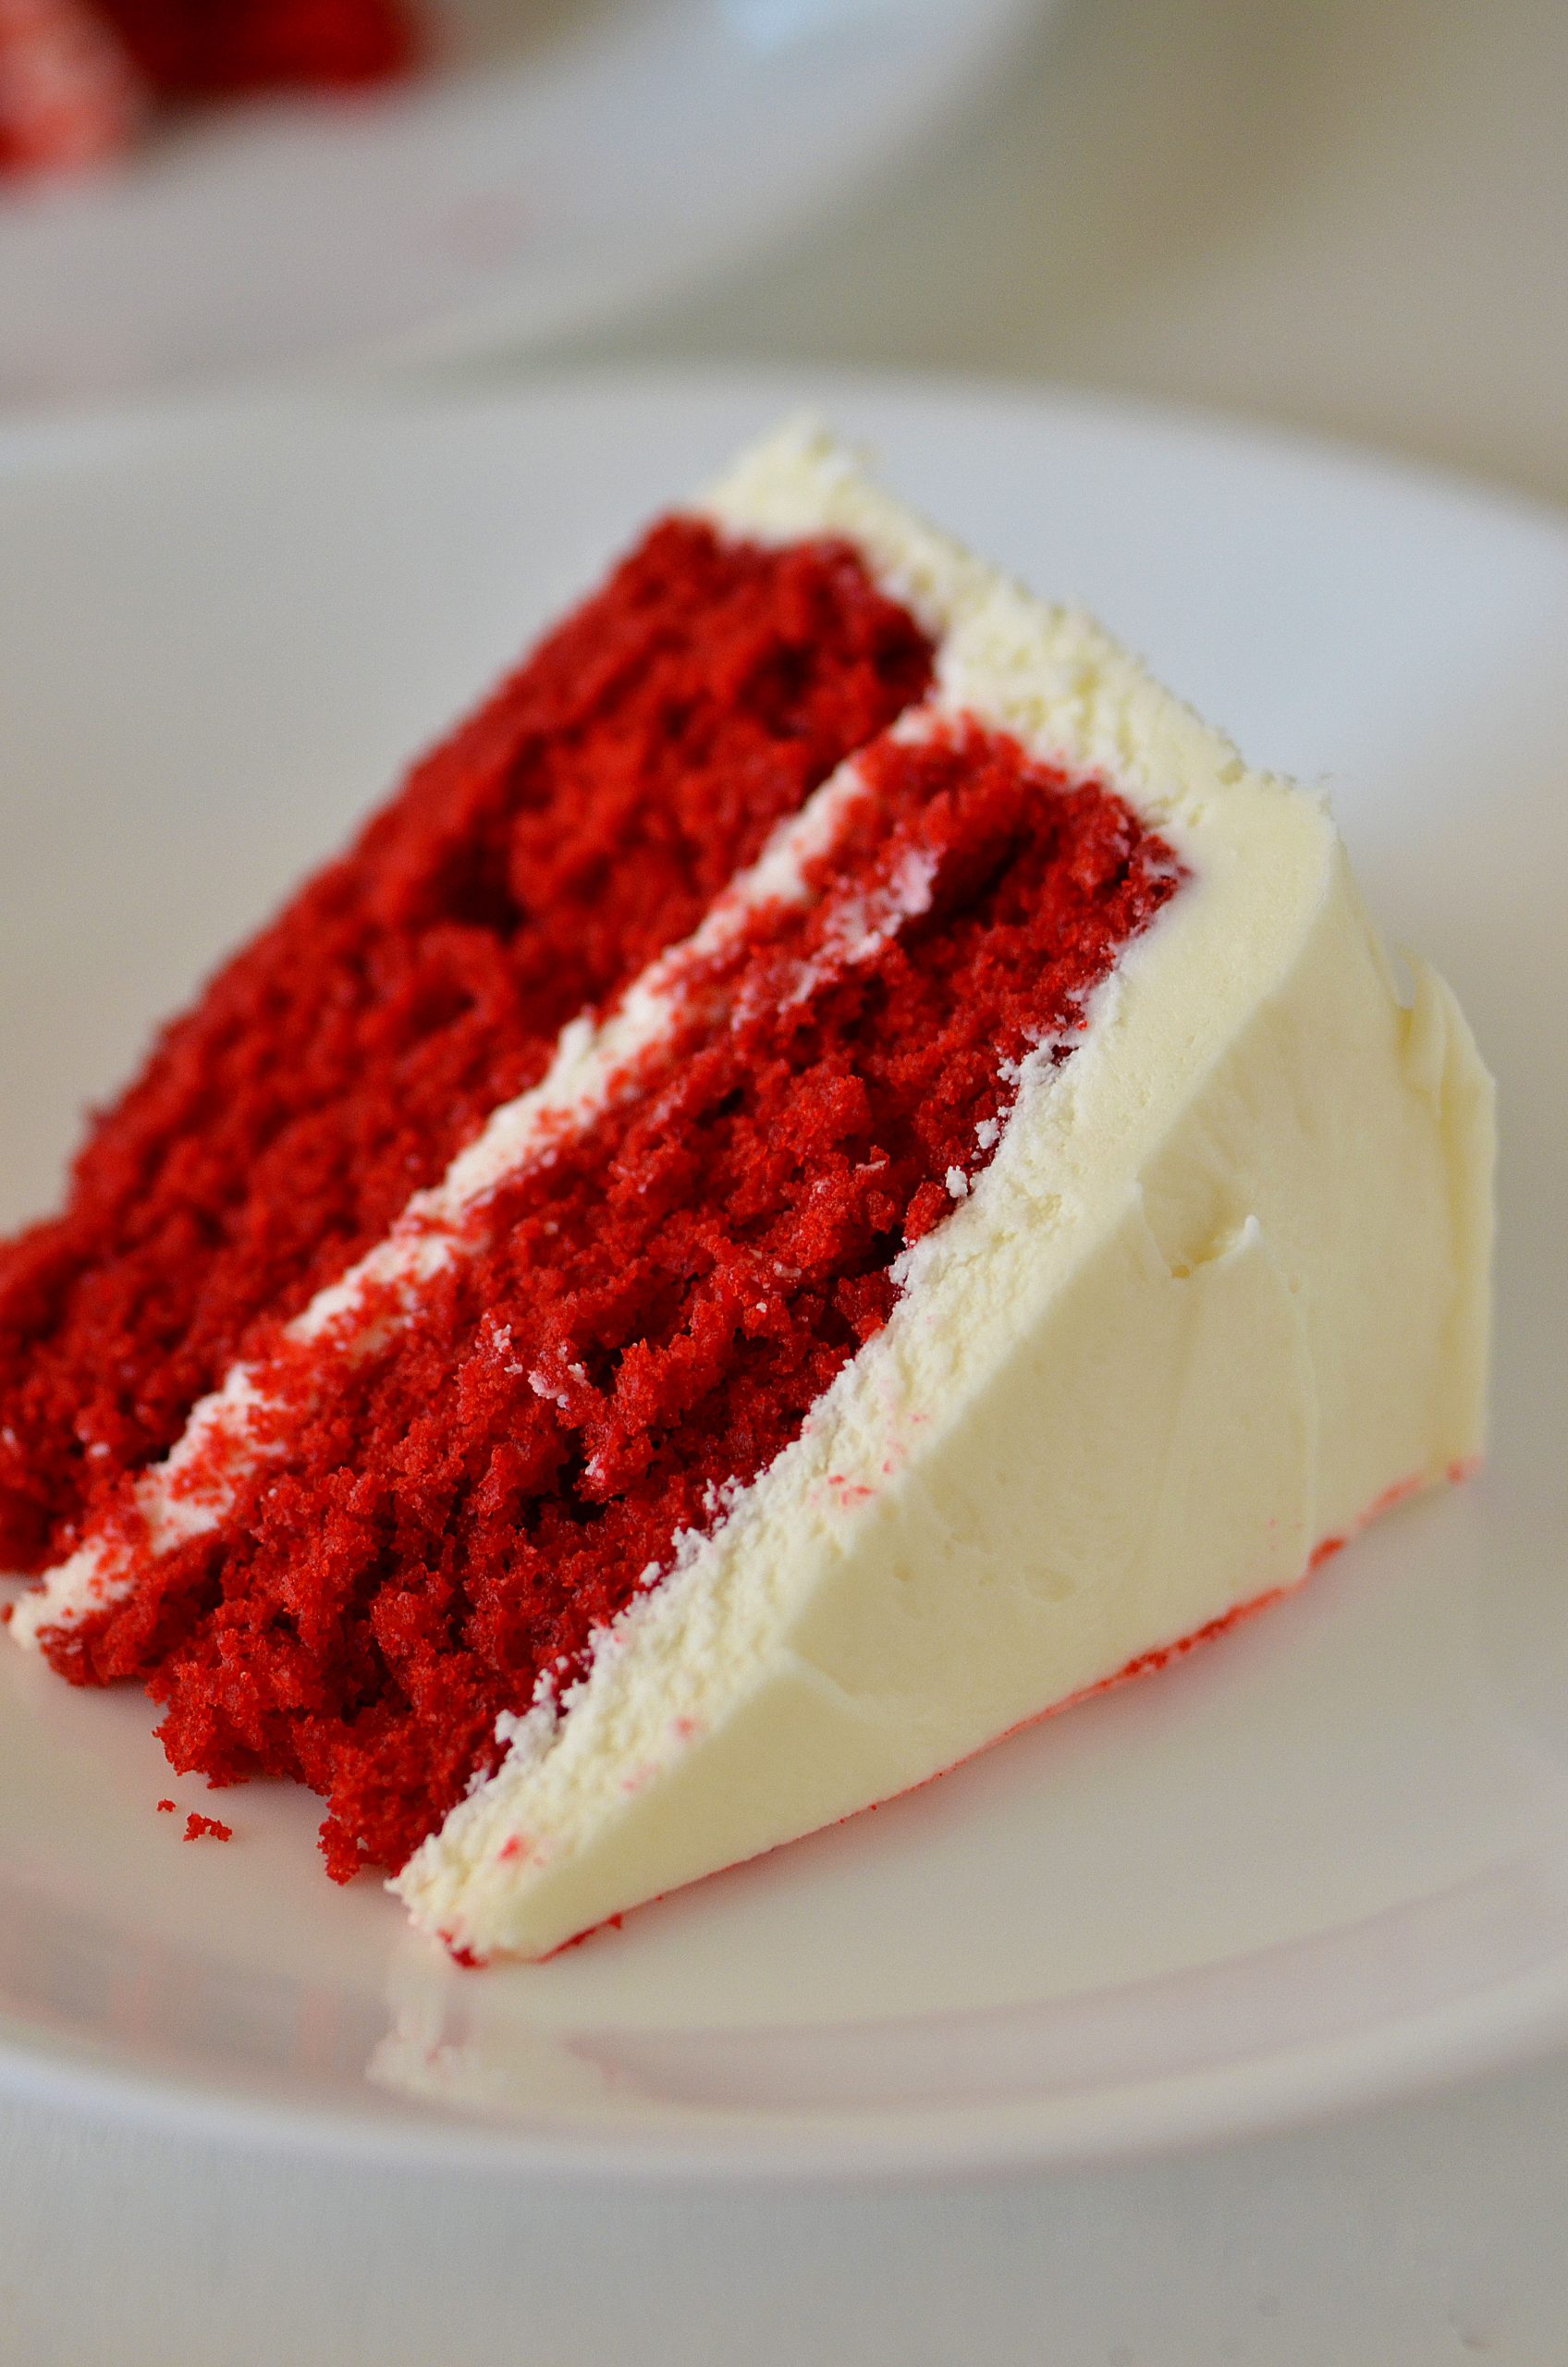 15 Best Joy Of Baking Red Velvet Cake – Easy Recipes To Make at Home